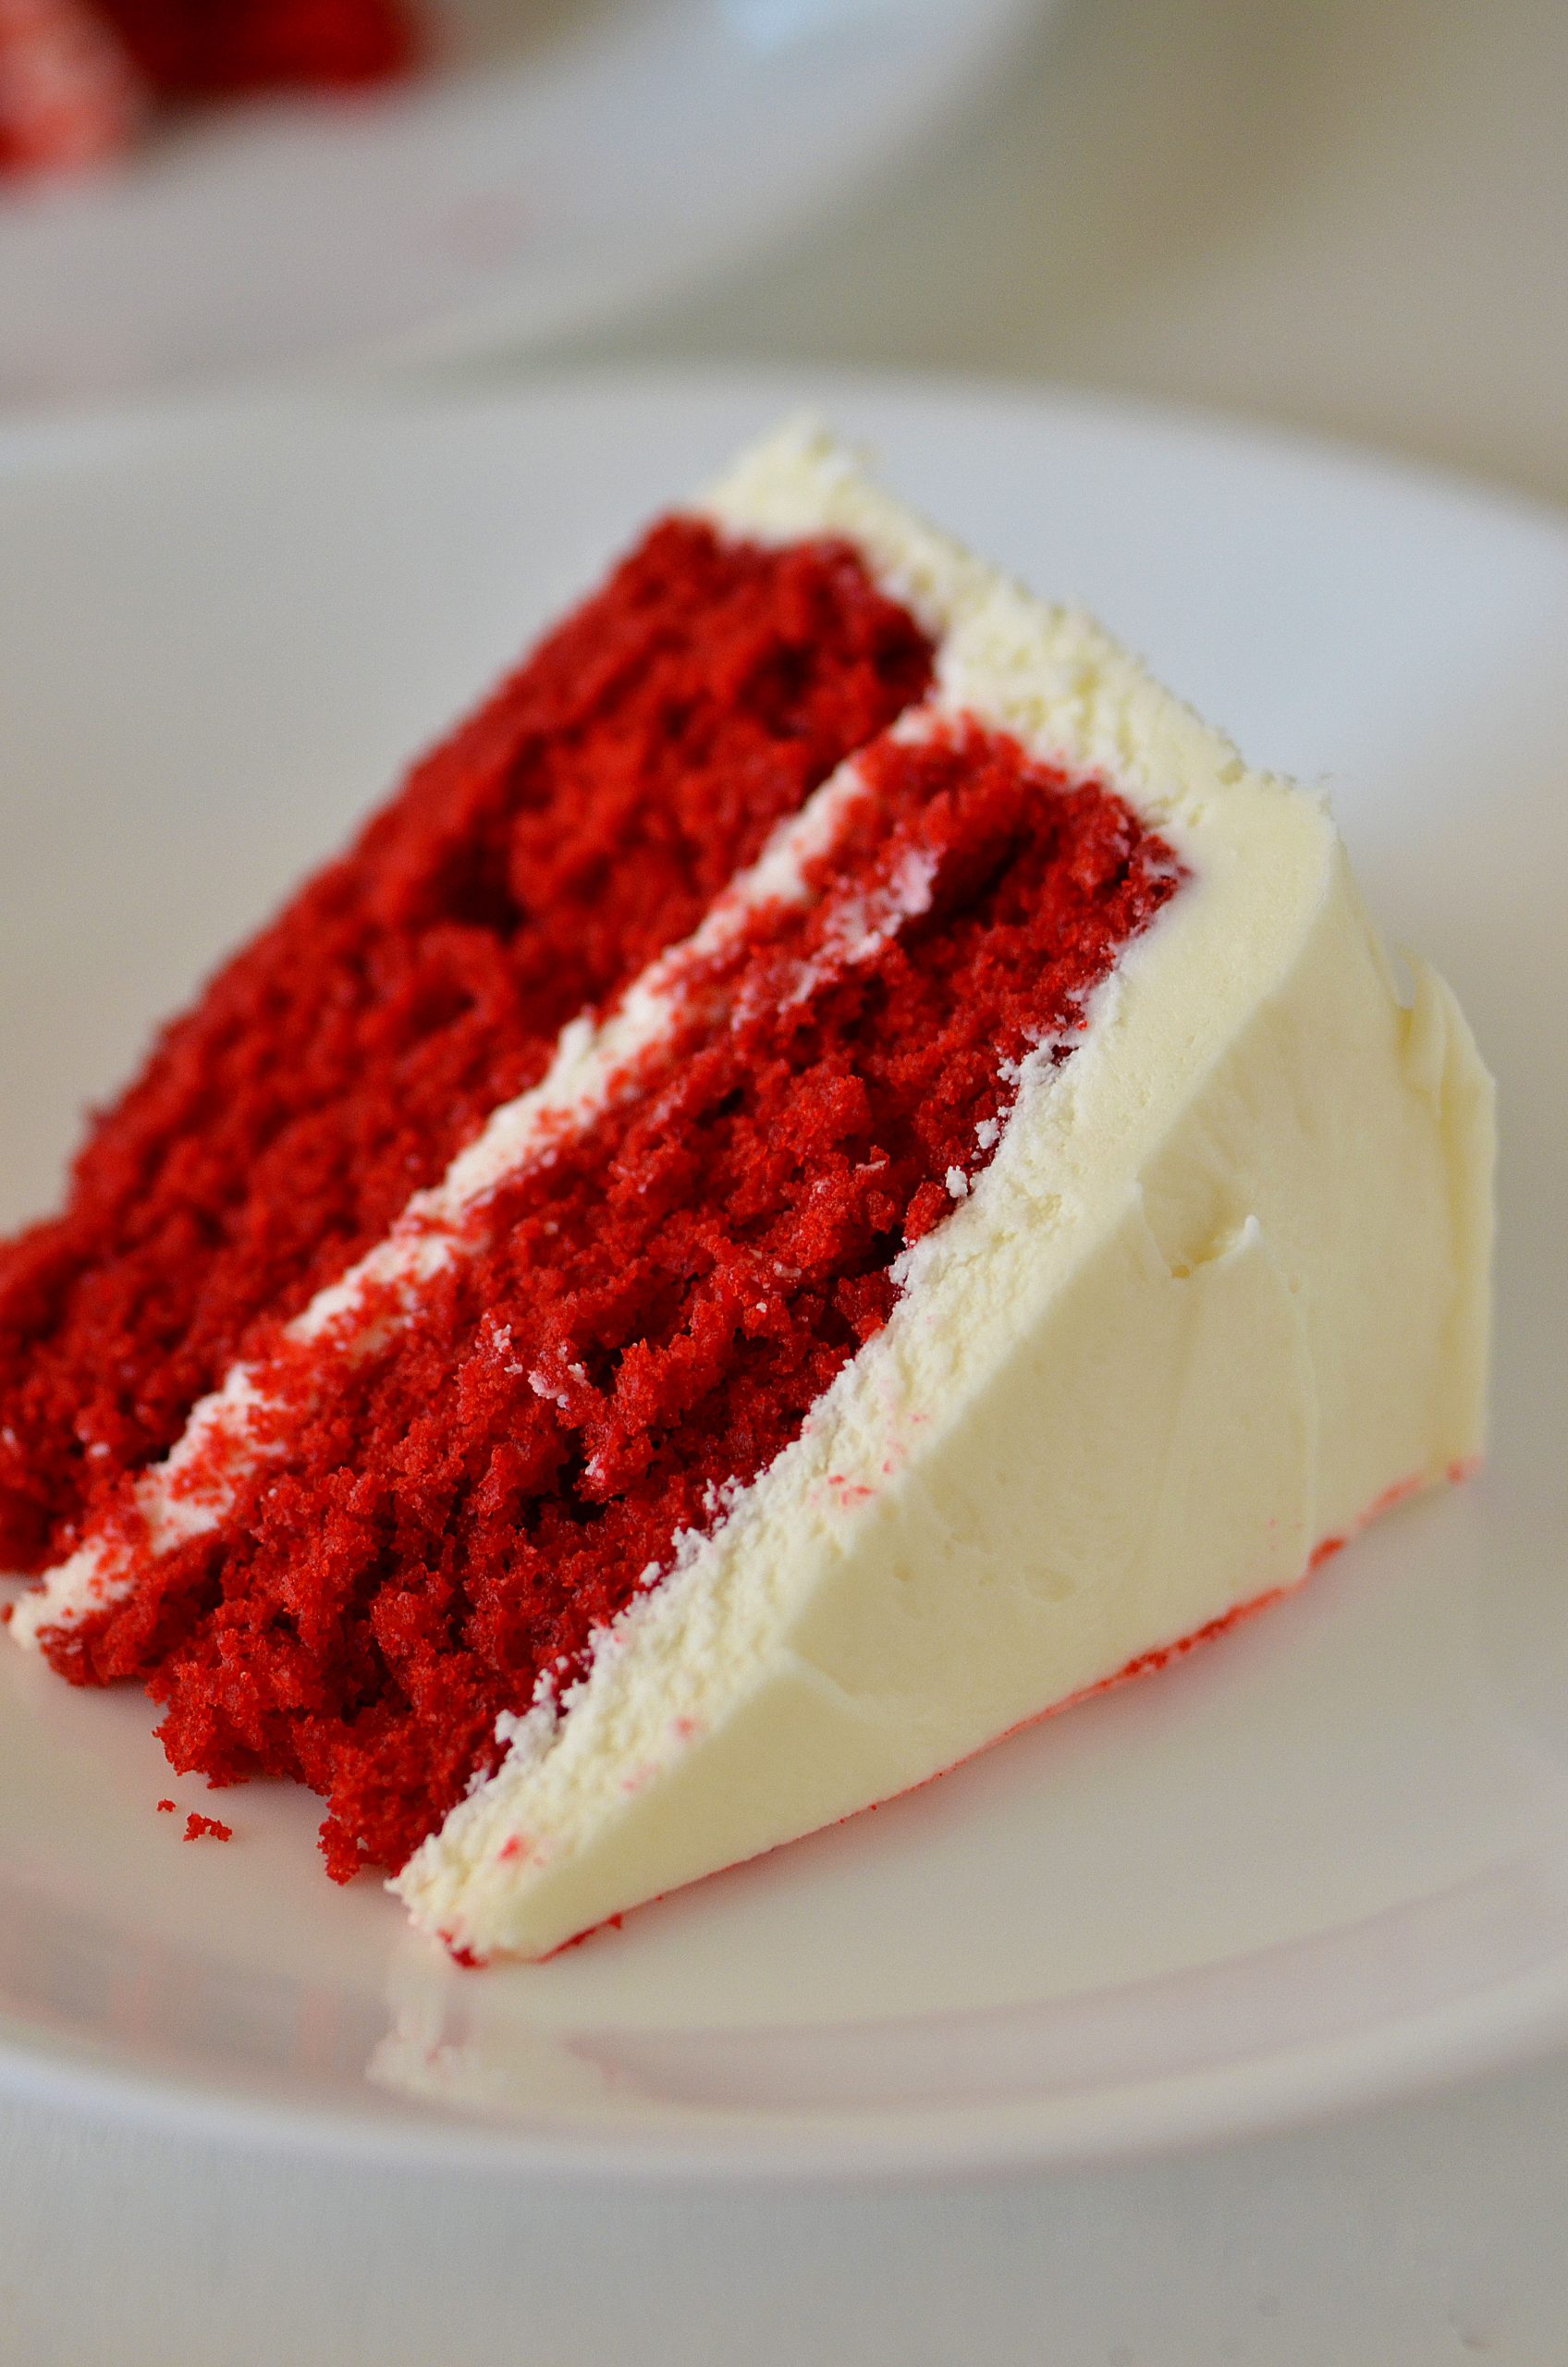 15 Best Joy Of Baking Red Velvet Cake – Easy Recipes To Make at Home